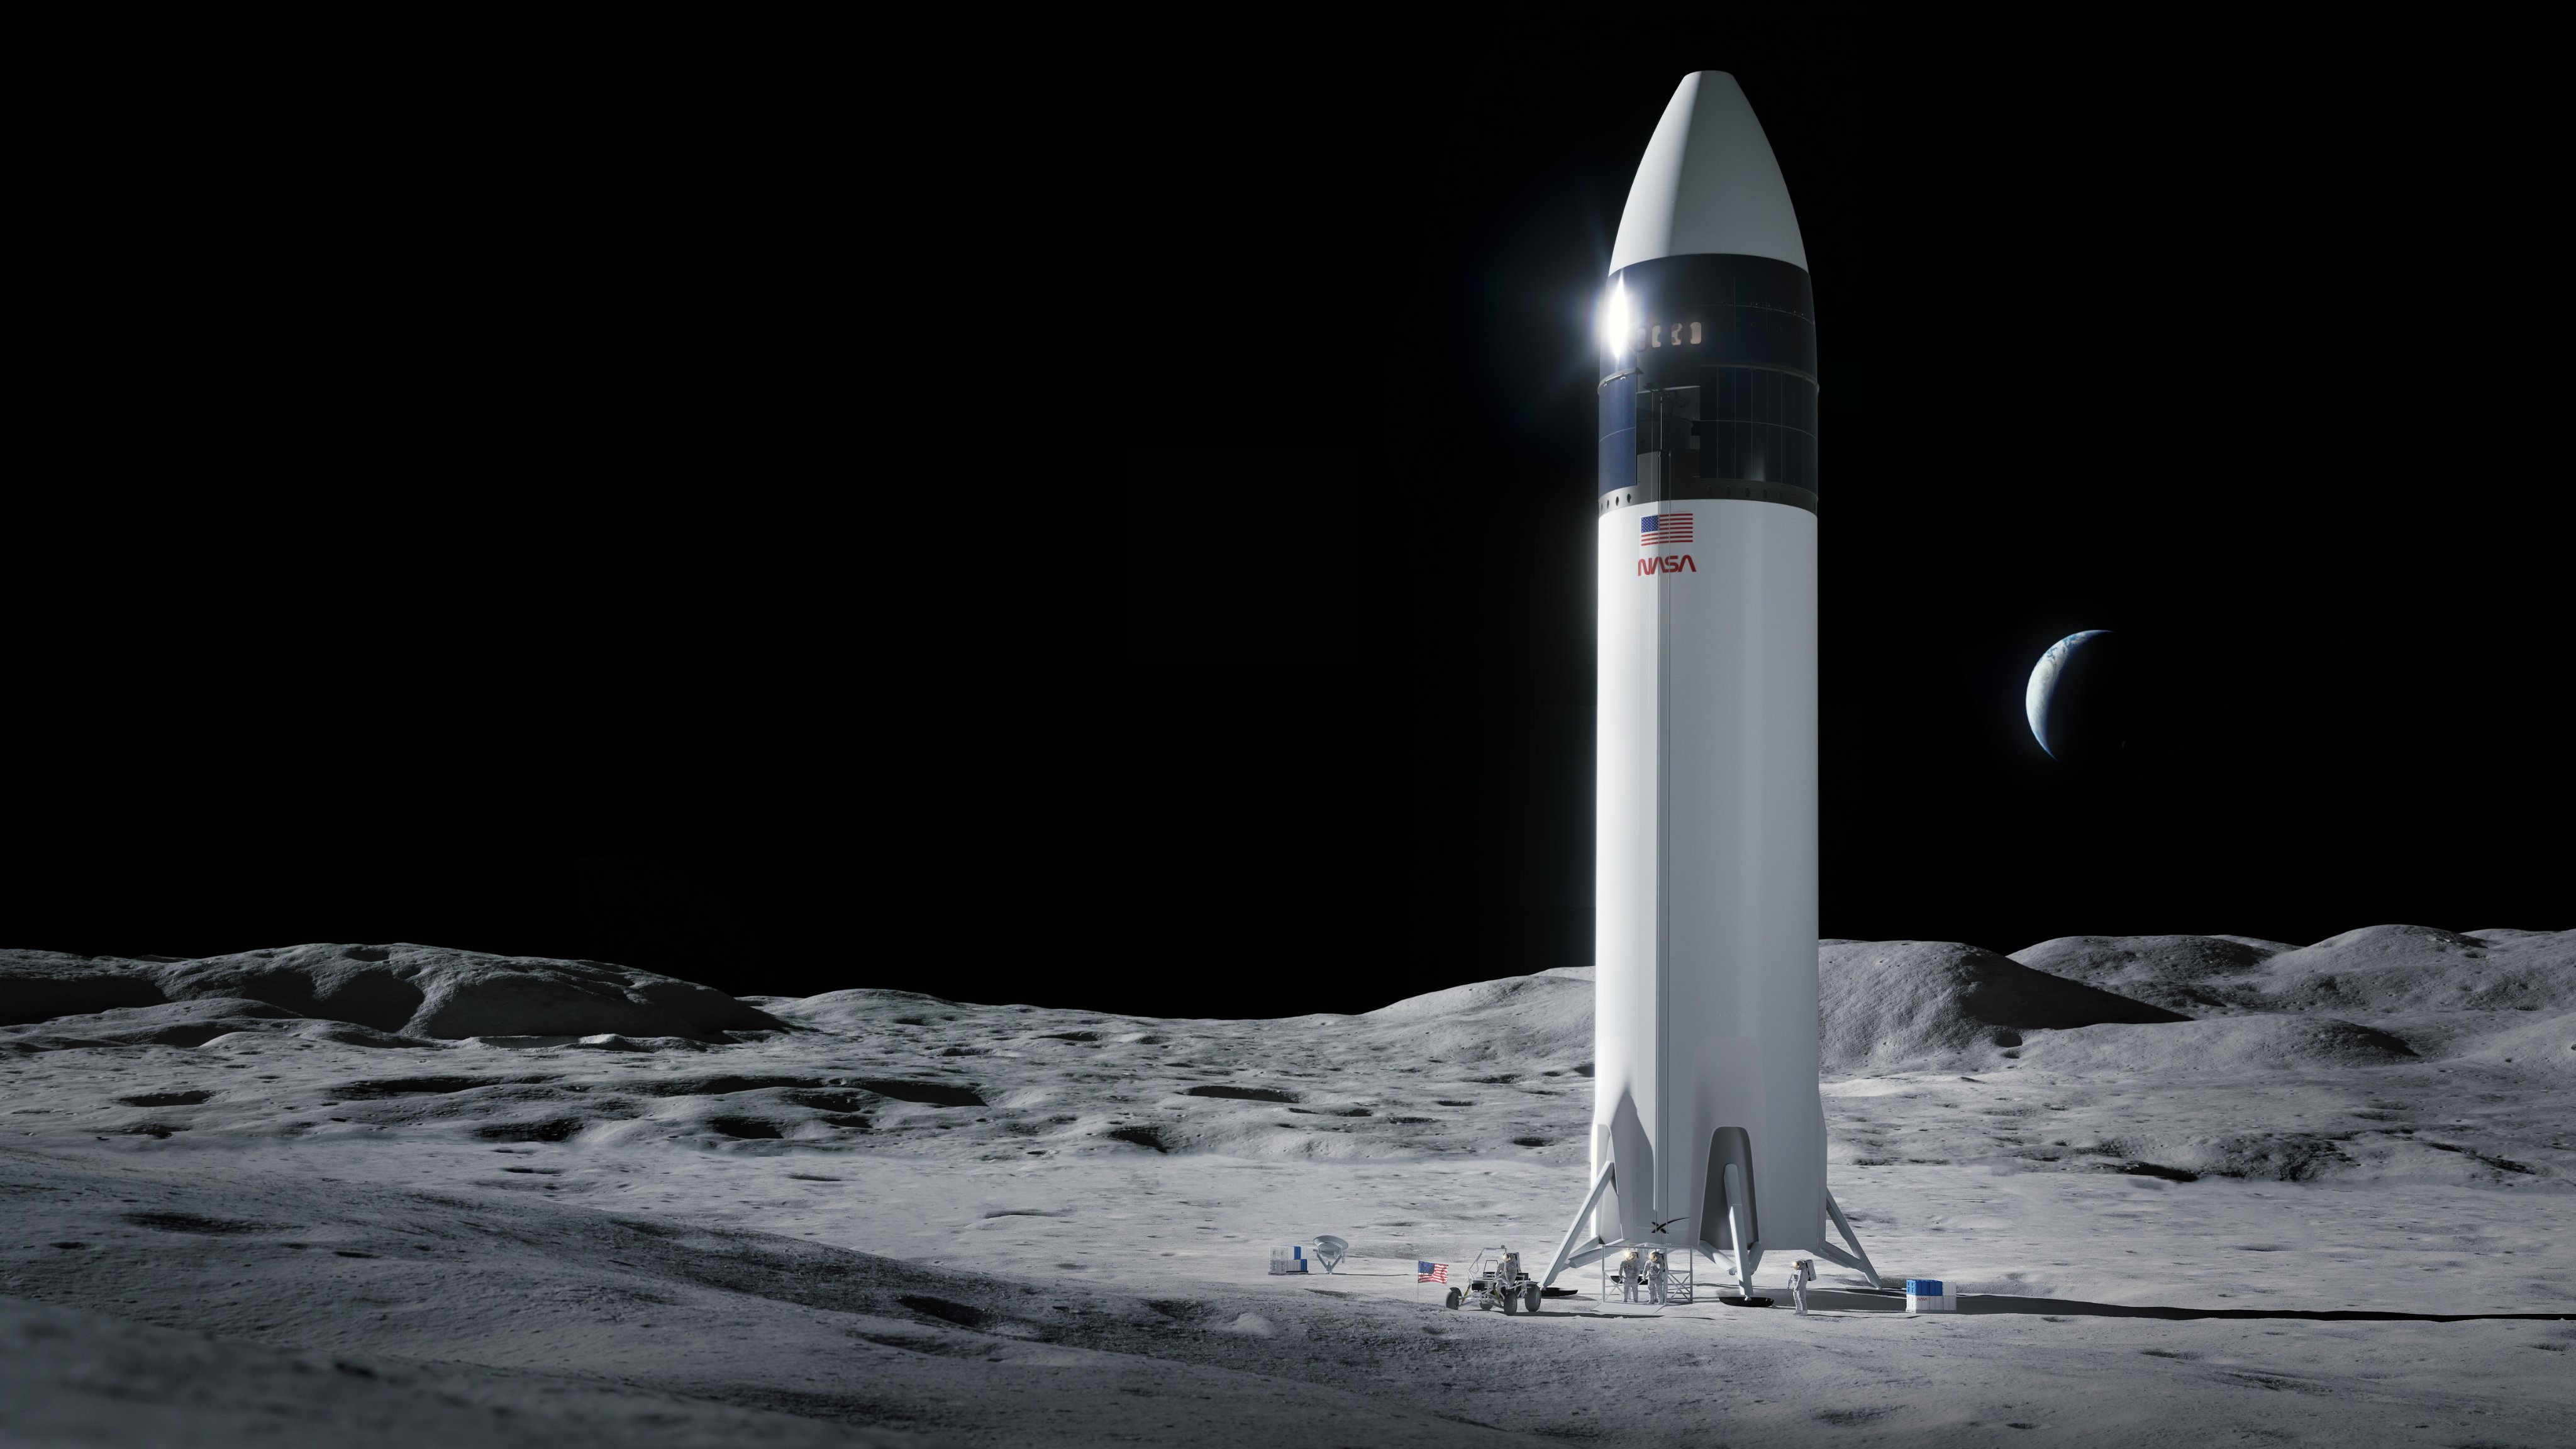 Η SpaceX επελέγη από τη NASA για την κατασκευή της σεληνιακής ακάτου